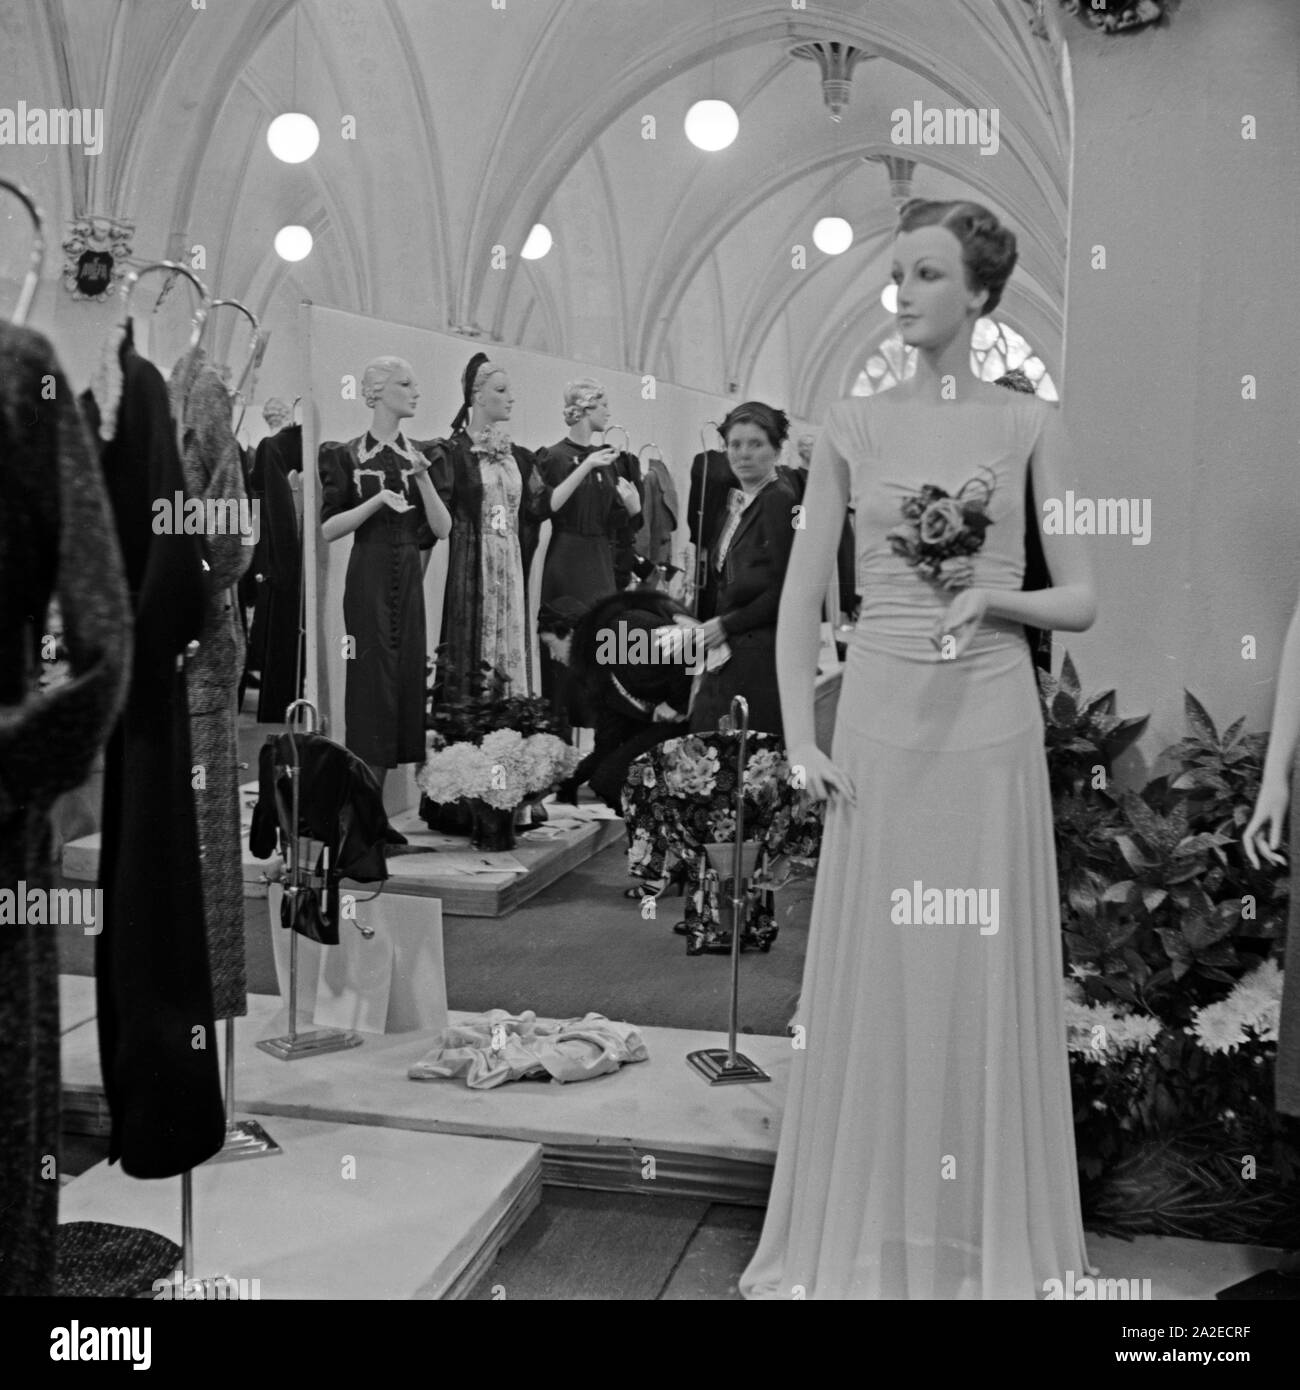 Einkäufer sehen sich die Ausstellung im Rahmen der ADEFA Modenschau an, Deutschland 1930er Jahre. Purchasing agents strolling through the exhibition at the ADEFA fashion show, Germany 1930s. Stock Photo